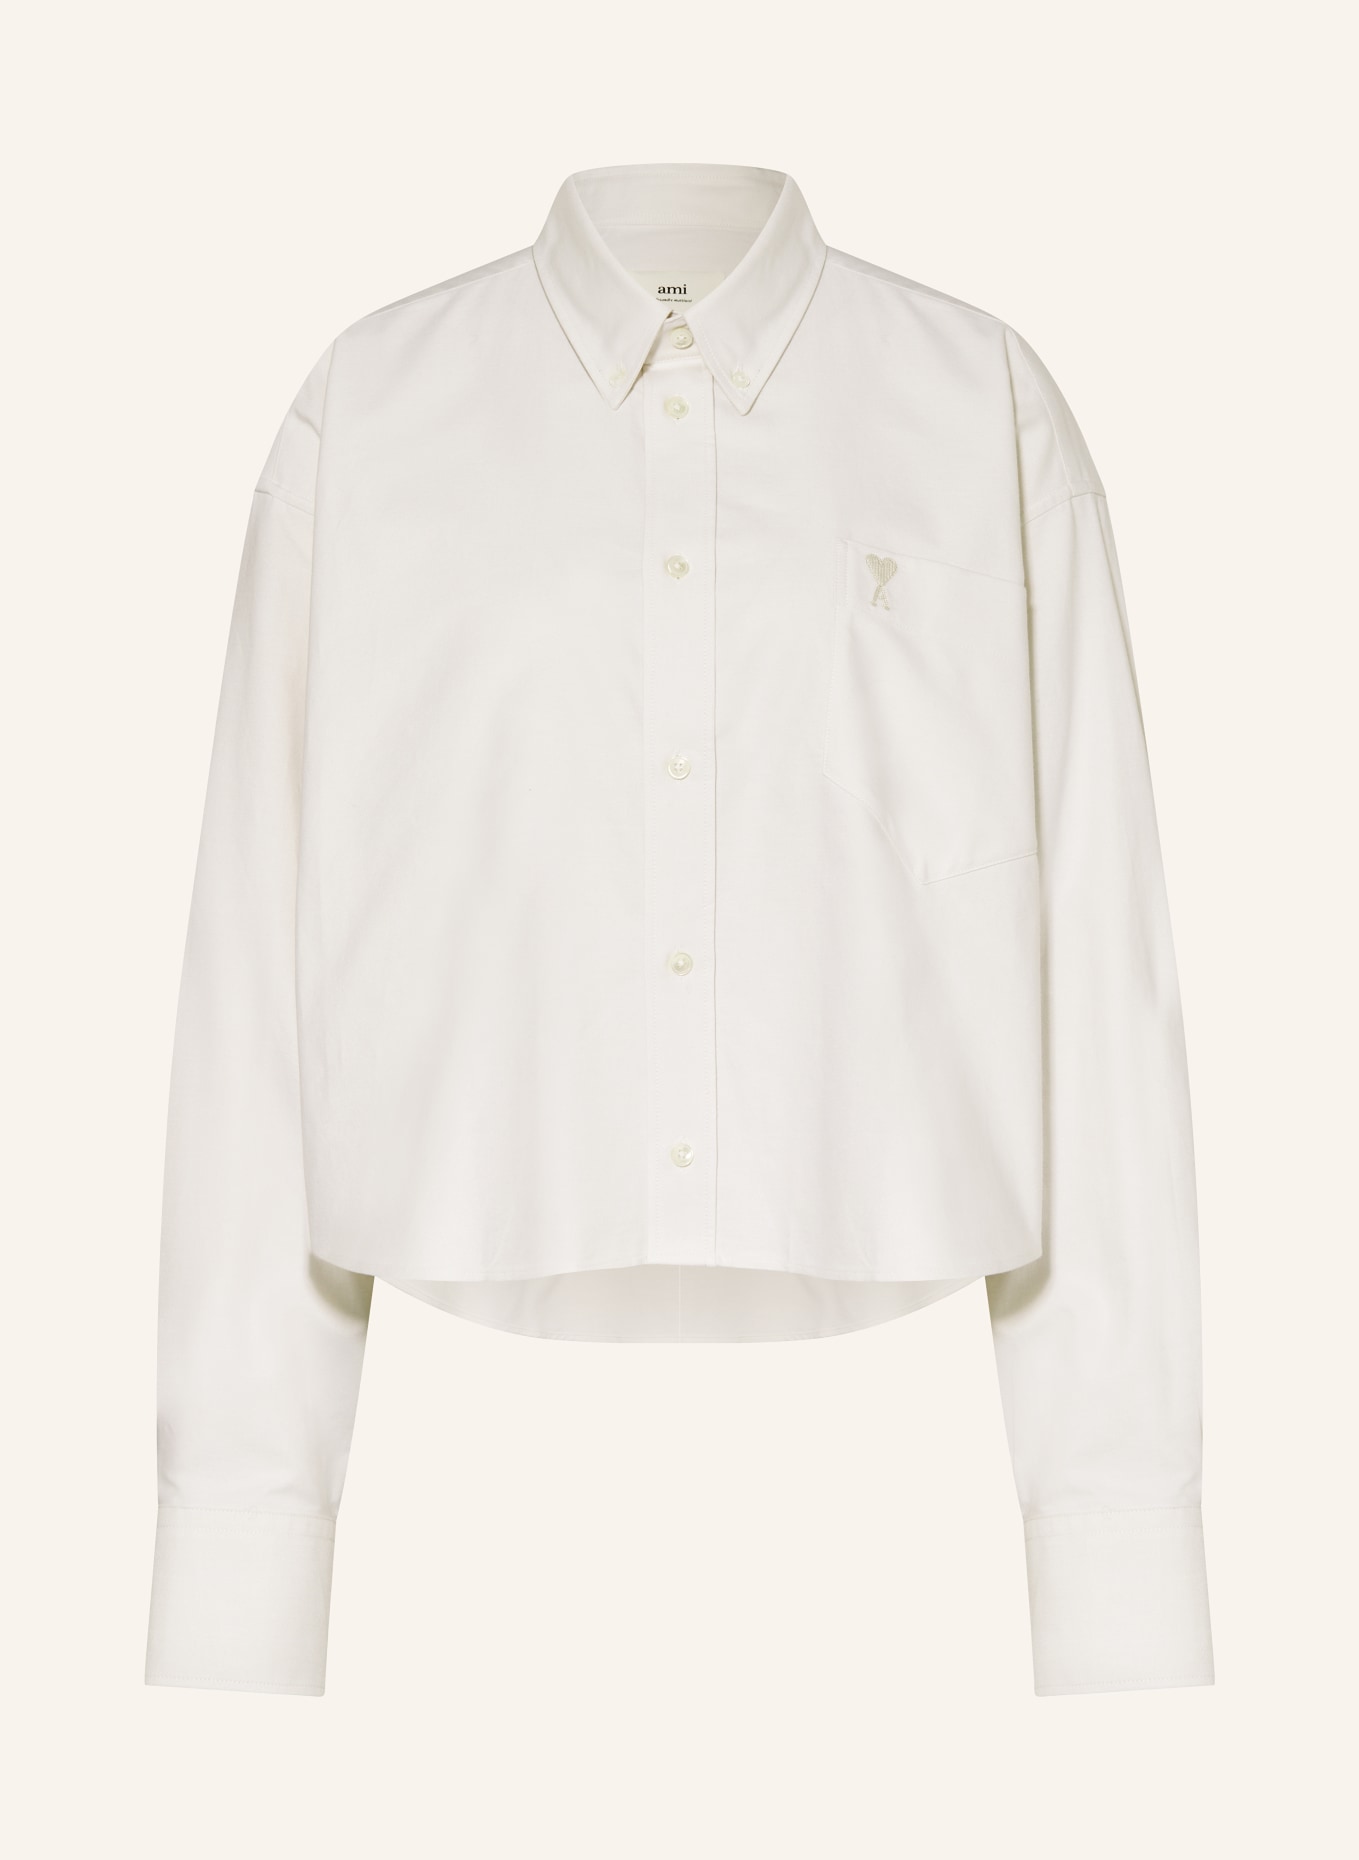 AMI PARIS Cropped shirt blouse, Color: ECRU (Image 1)